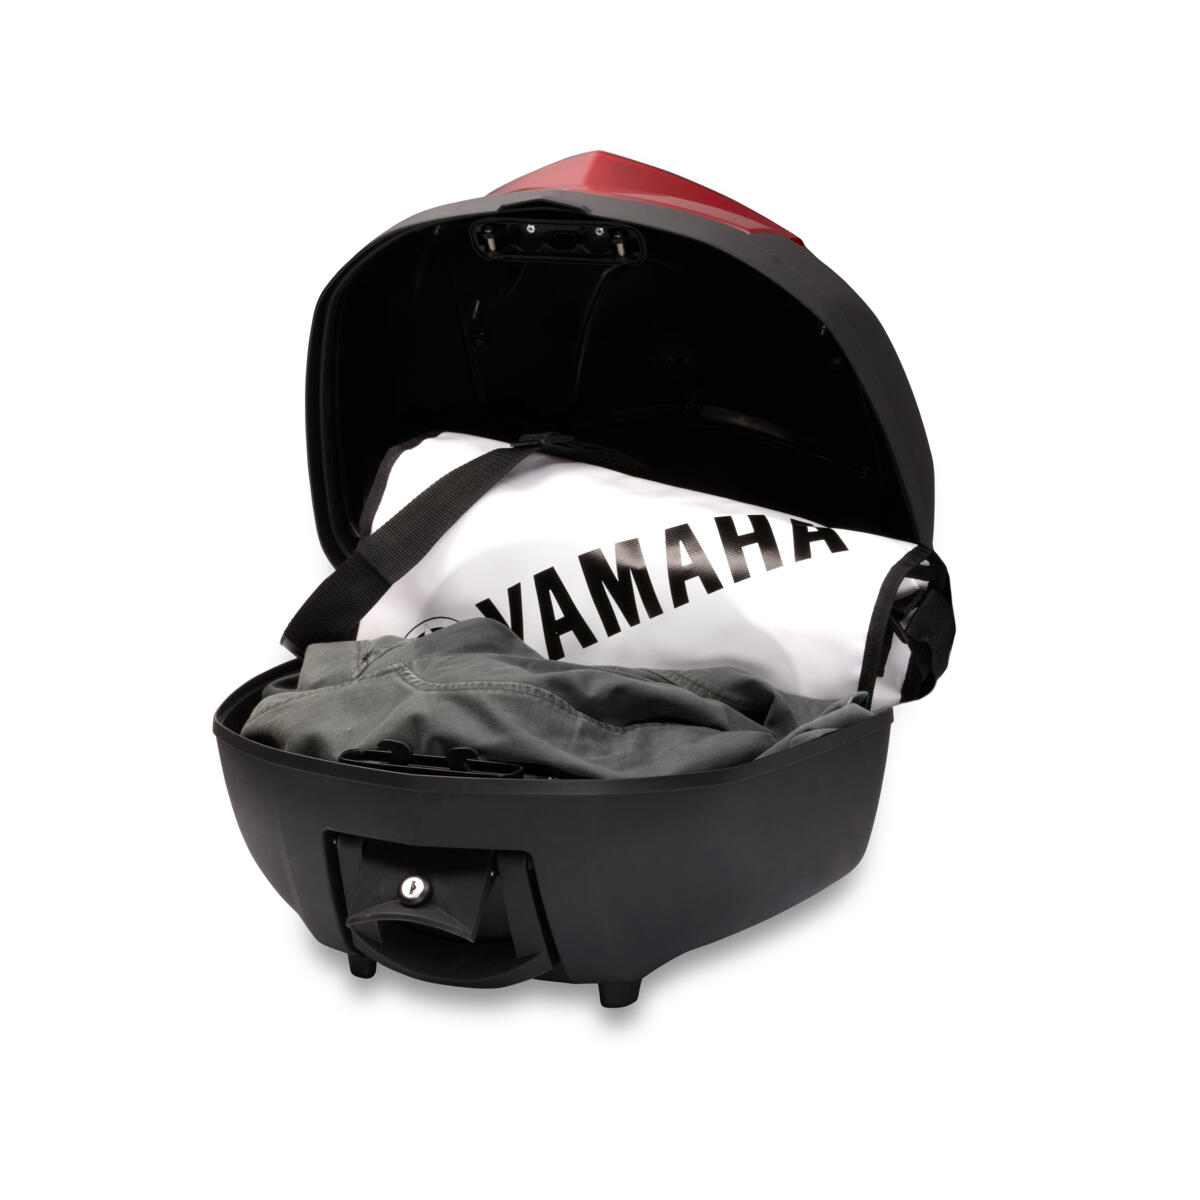 Portbagaj superior de calitate pentru capacitate suplimentară de bagaje/depozitare pe modelul tău Yamaha.